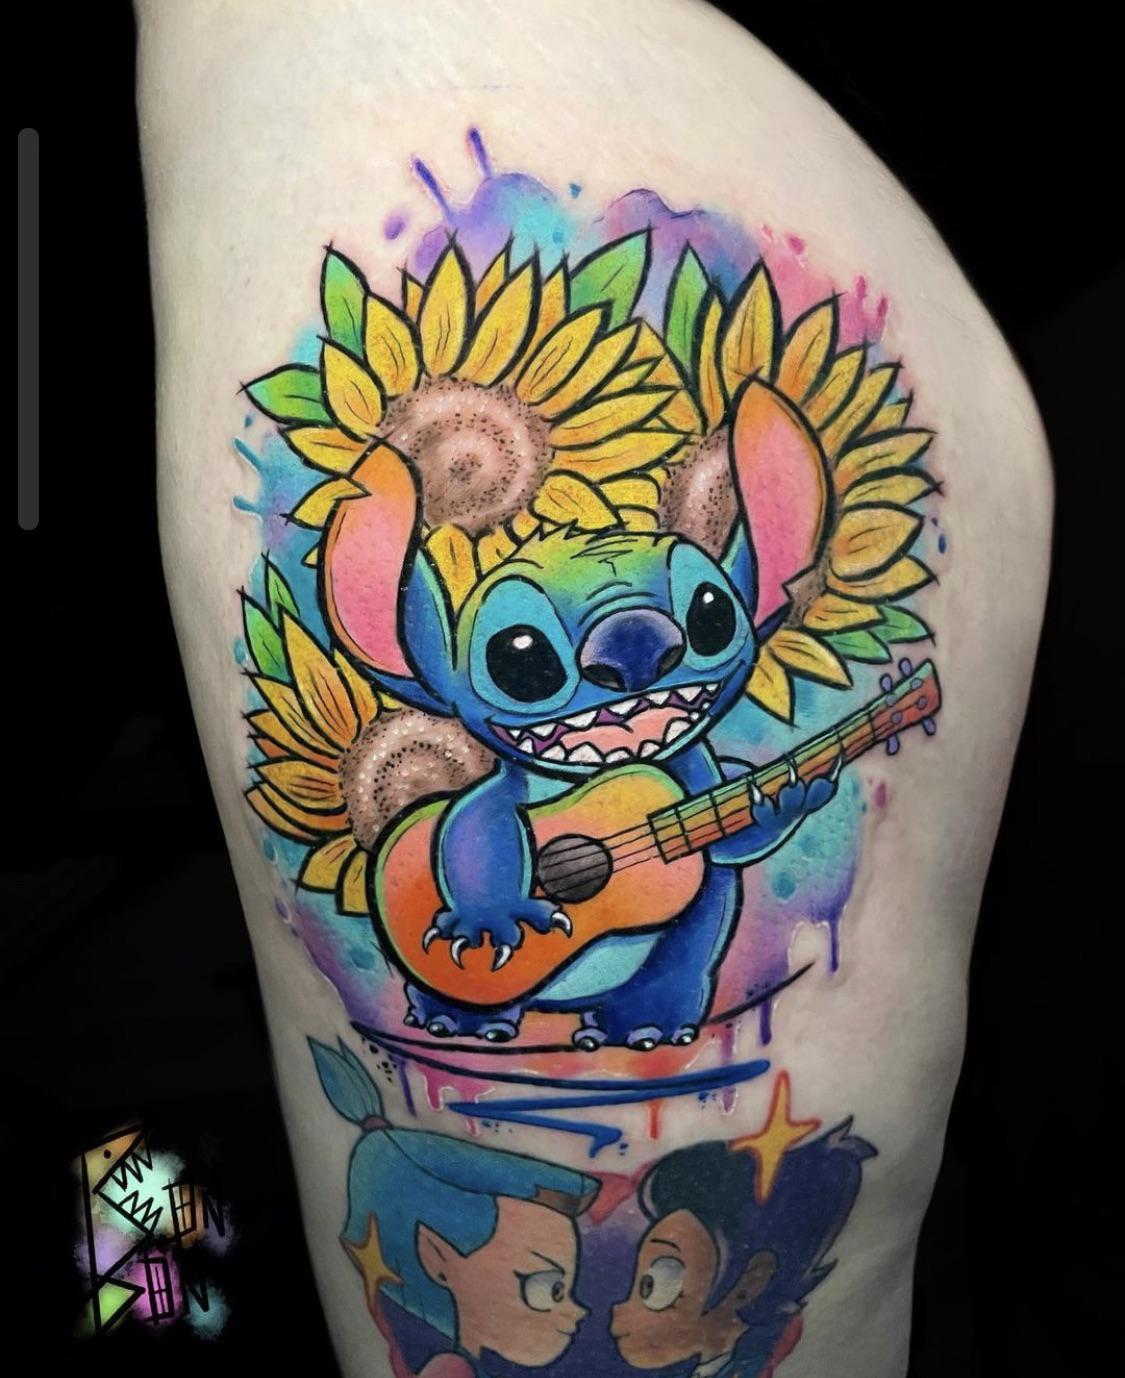 Lilo  Stitch Tattoo  Lilo and stitch tattoo Stitch tattoo Disney stitch  tattoo